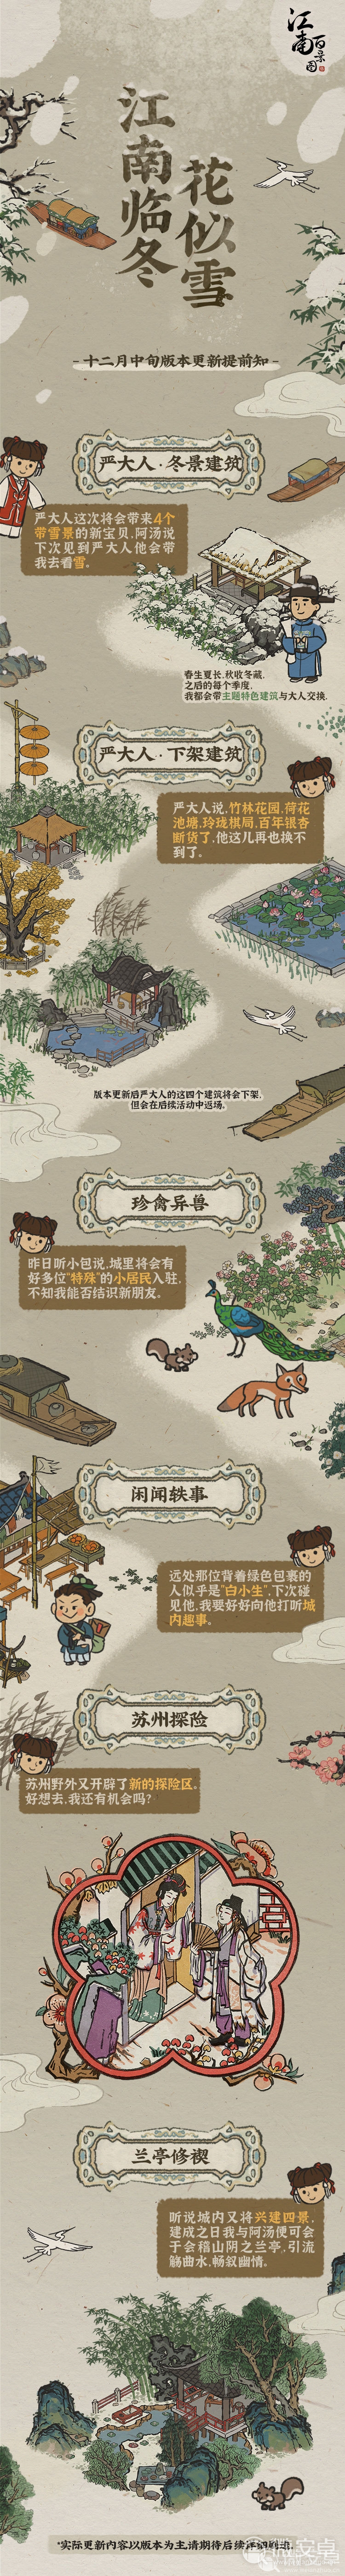 《江南百景图》十二月中旬版本计划提前预告